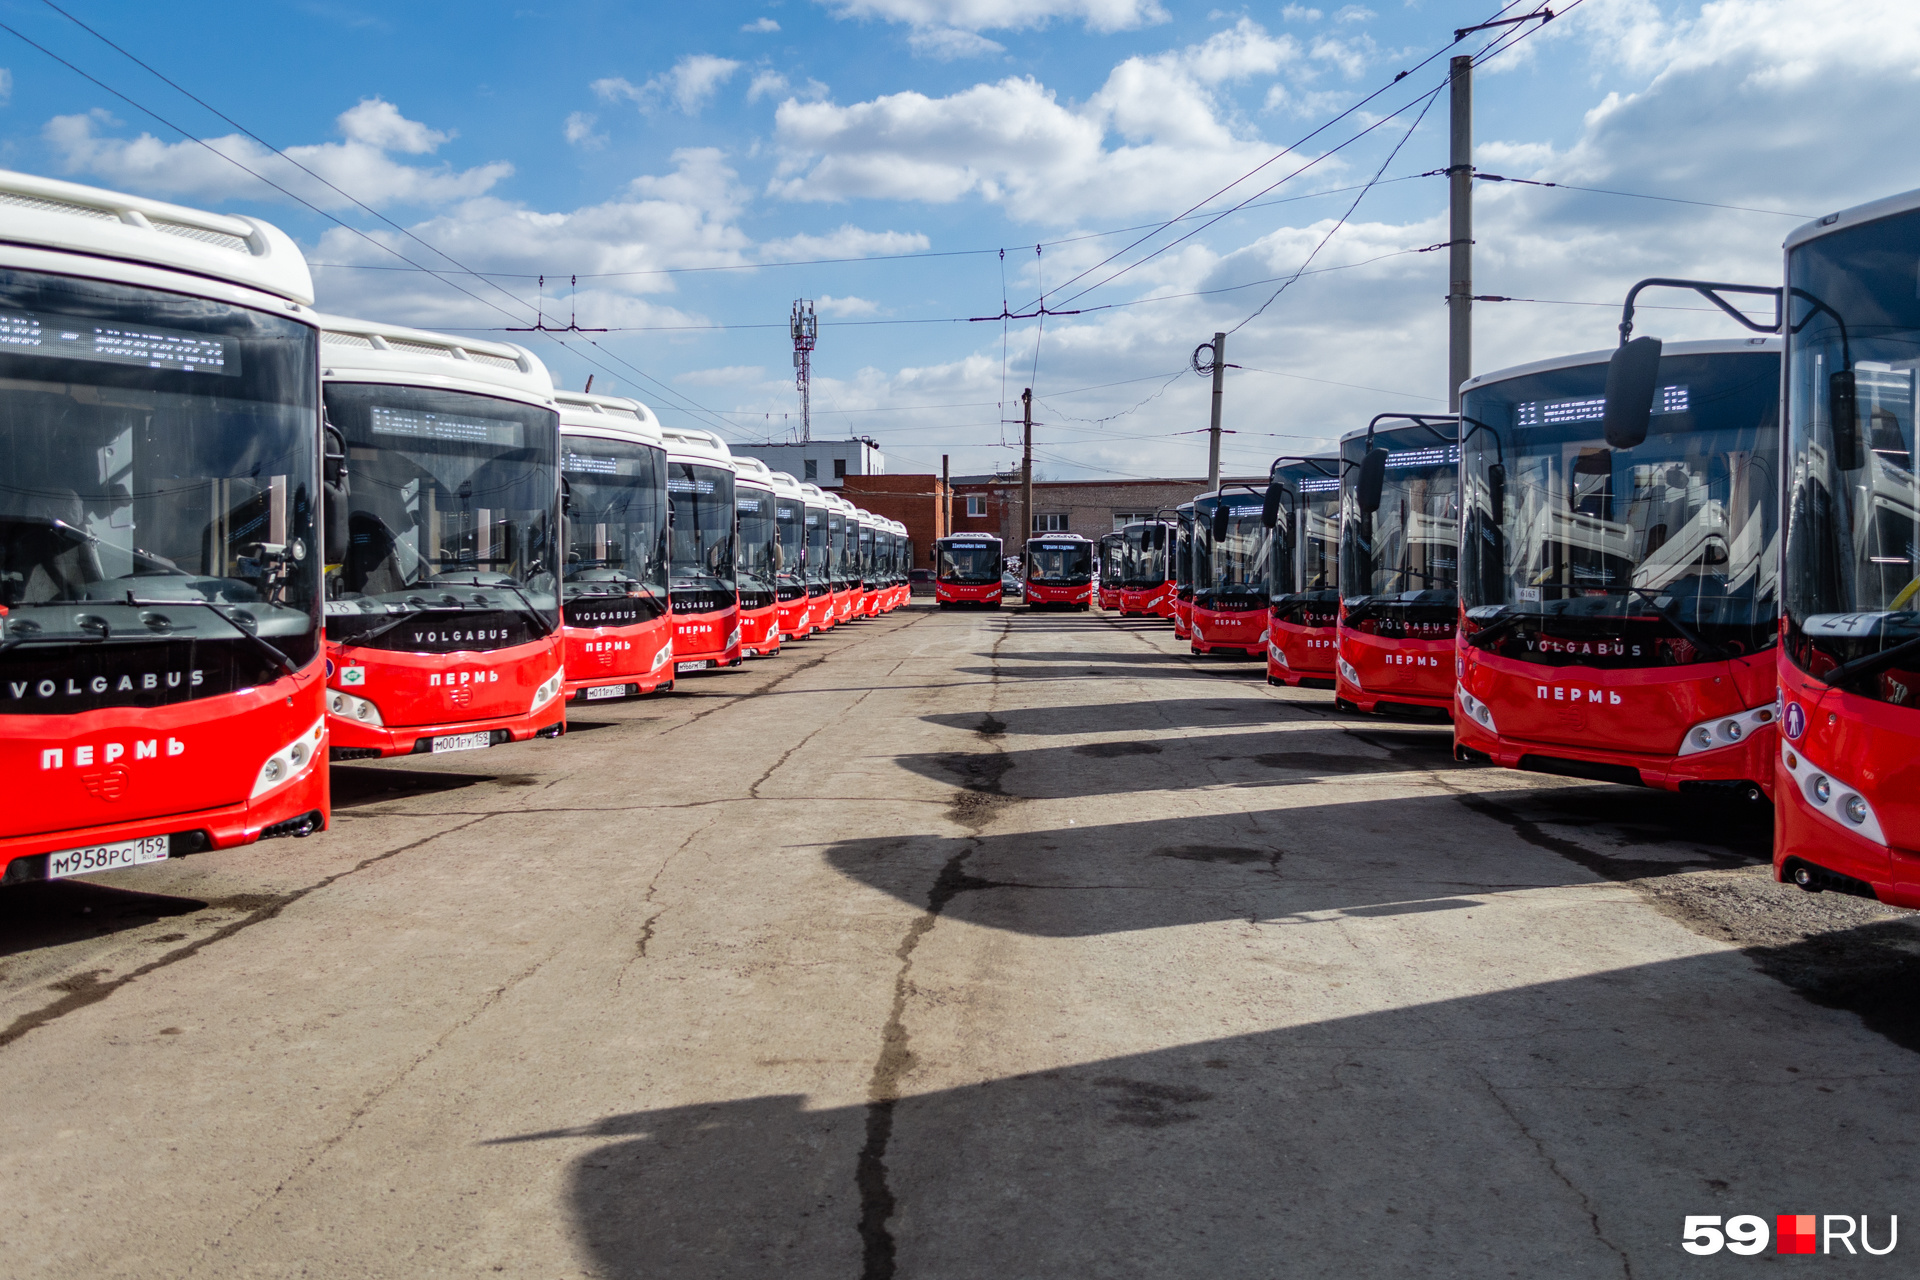 Сейчас в Перми около сотни новых автобусов